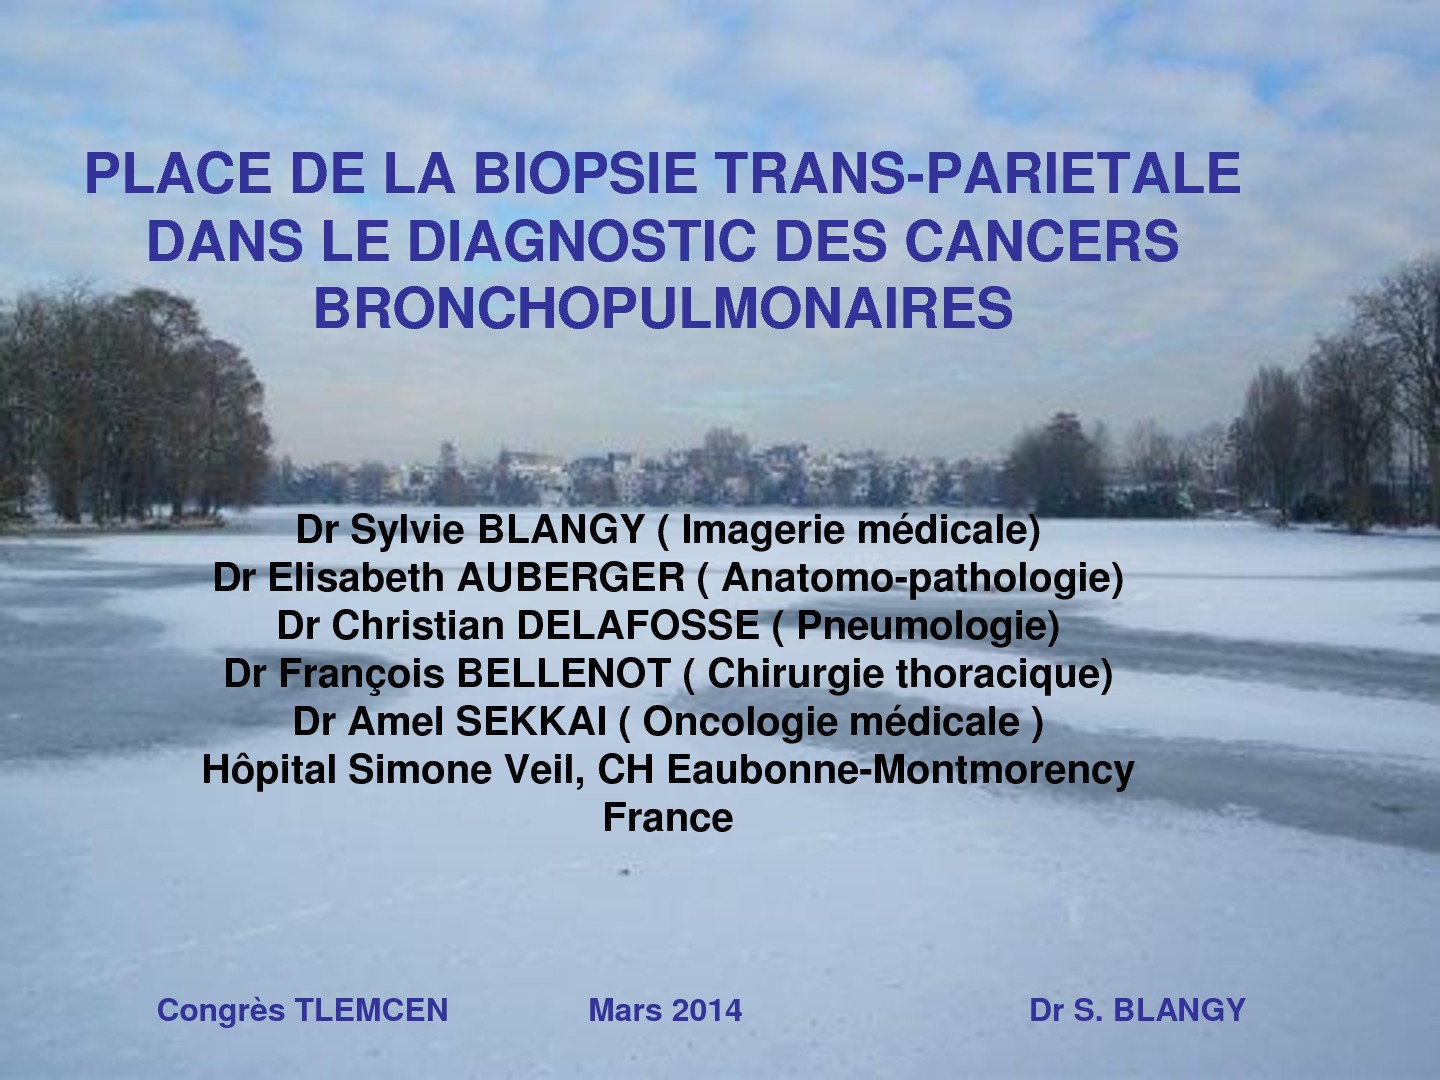 Place des biopsies transthoraciques dans le diagnostic des cancers bronchopulmonaires. S. BLANGY